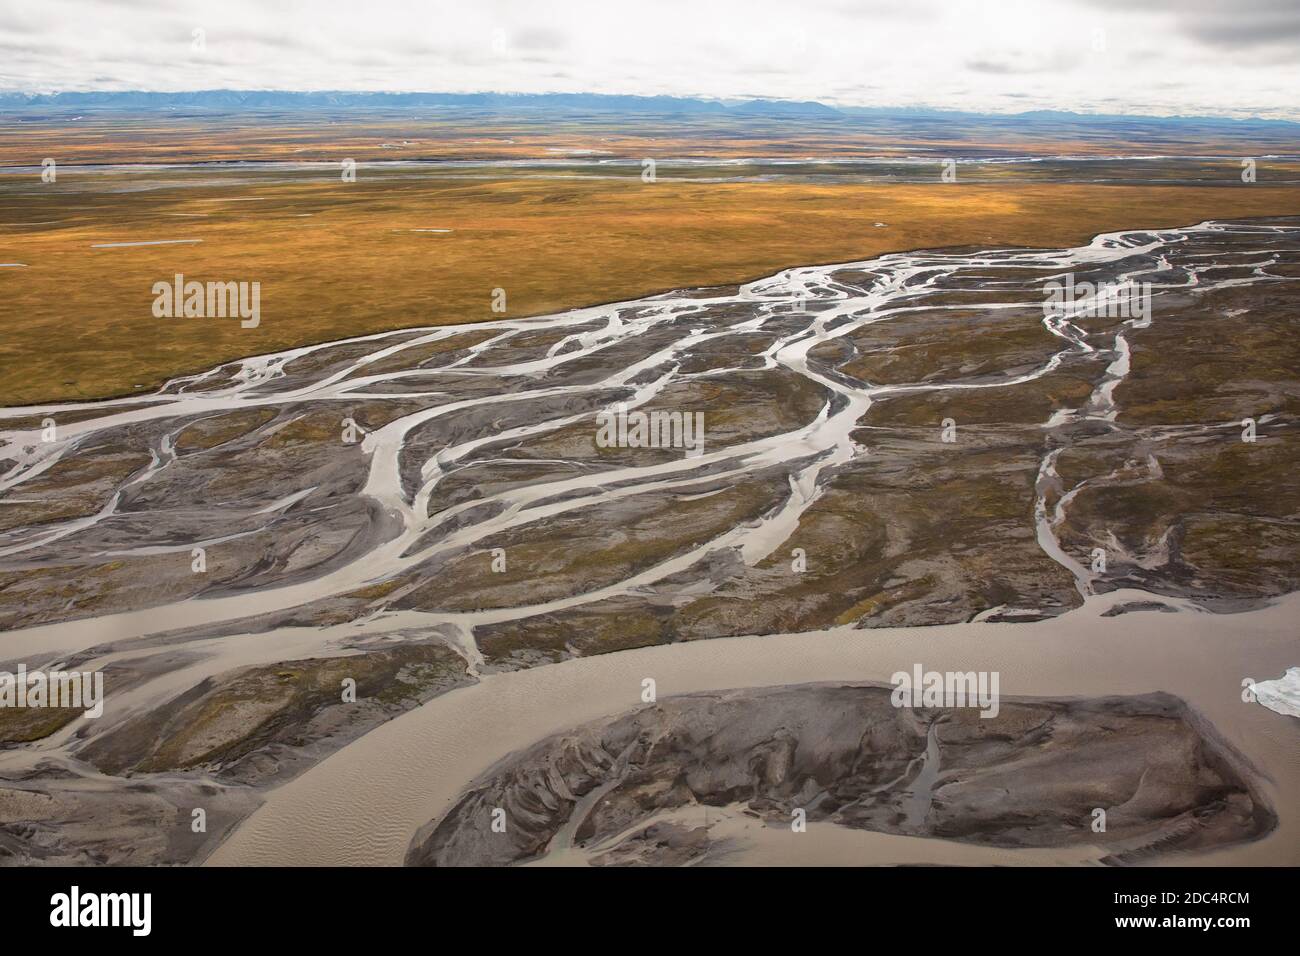 Vue aérienne d'une vallée fluviale glaciaire et de la chaîne Brooks à la réserve naturelle nationale de l'Arctique, dans le nord-est de l'Alaska. La réserve naturelle reculée de l'Arctique couvre environ 19.64 millions d'hectares de terres et est la plus grande réserve sauvage des États-Unis. Banque D'Images